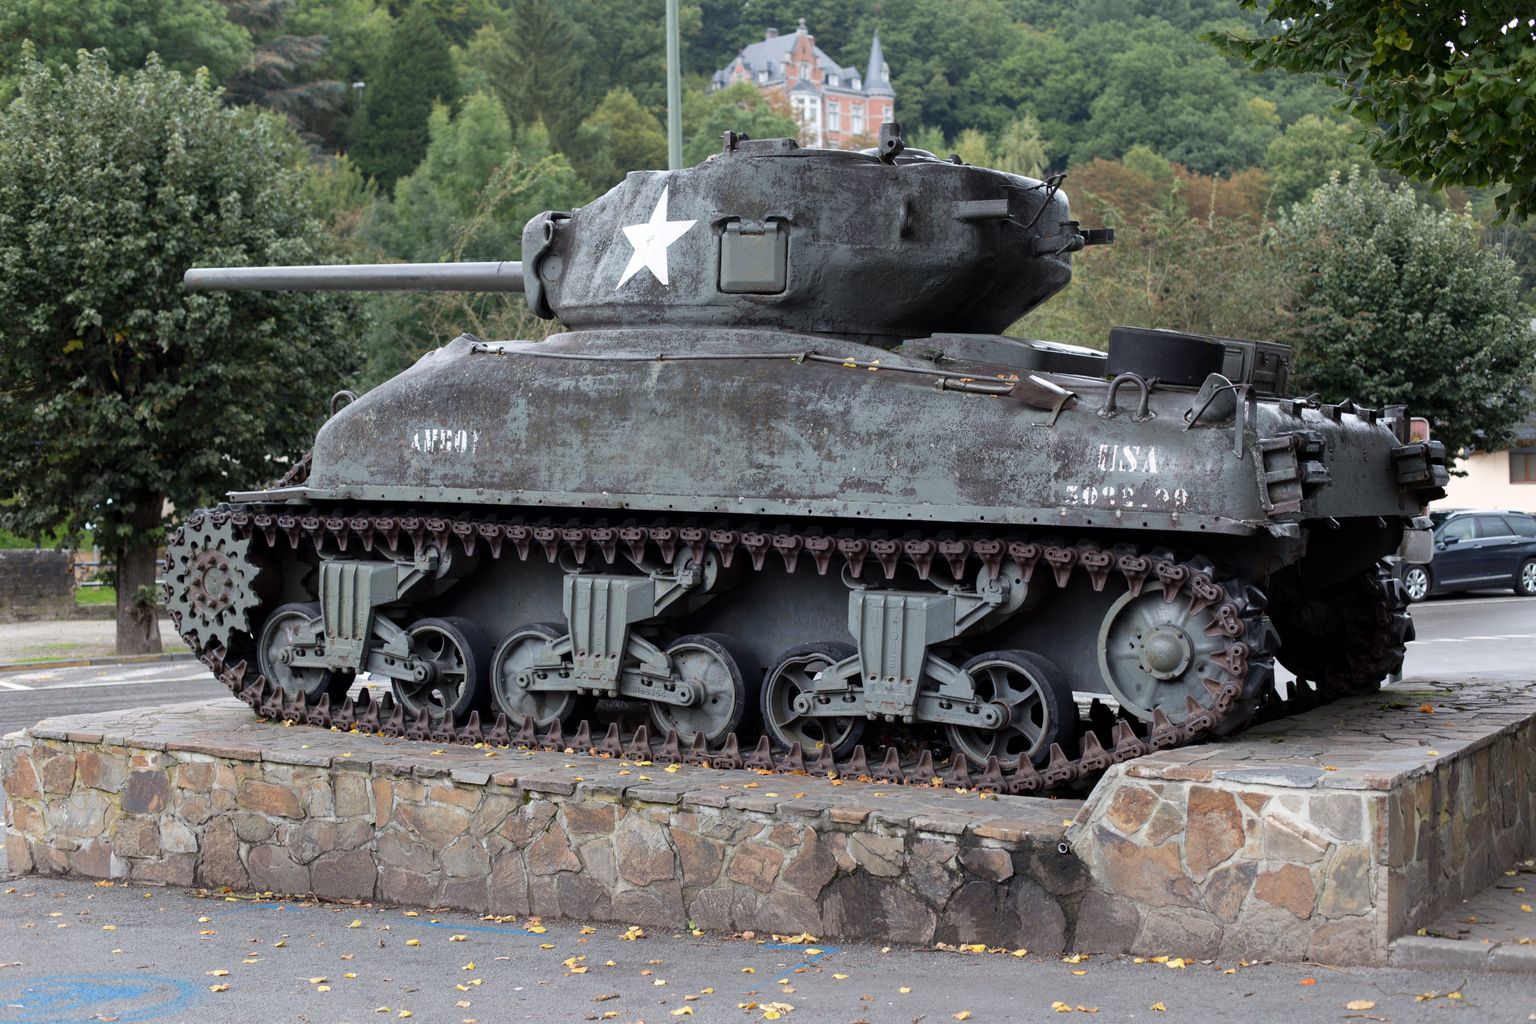 USA tank M4a1 Sherman on jäetud Belgias Teises maailmasõjas USA 2. ja 3. soomusdiviisi hukkunute mälestusmärgiks. Belgia, La Roche.